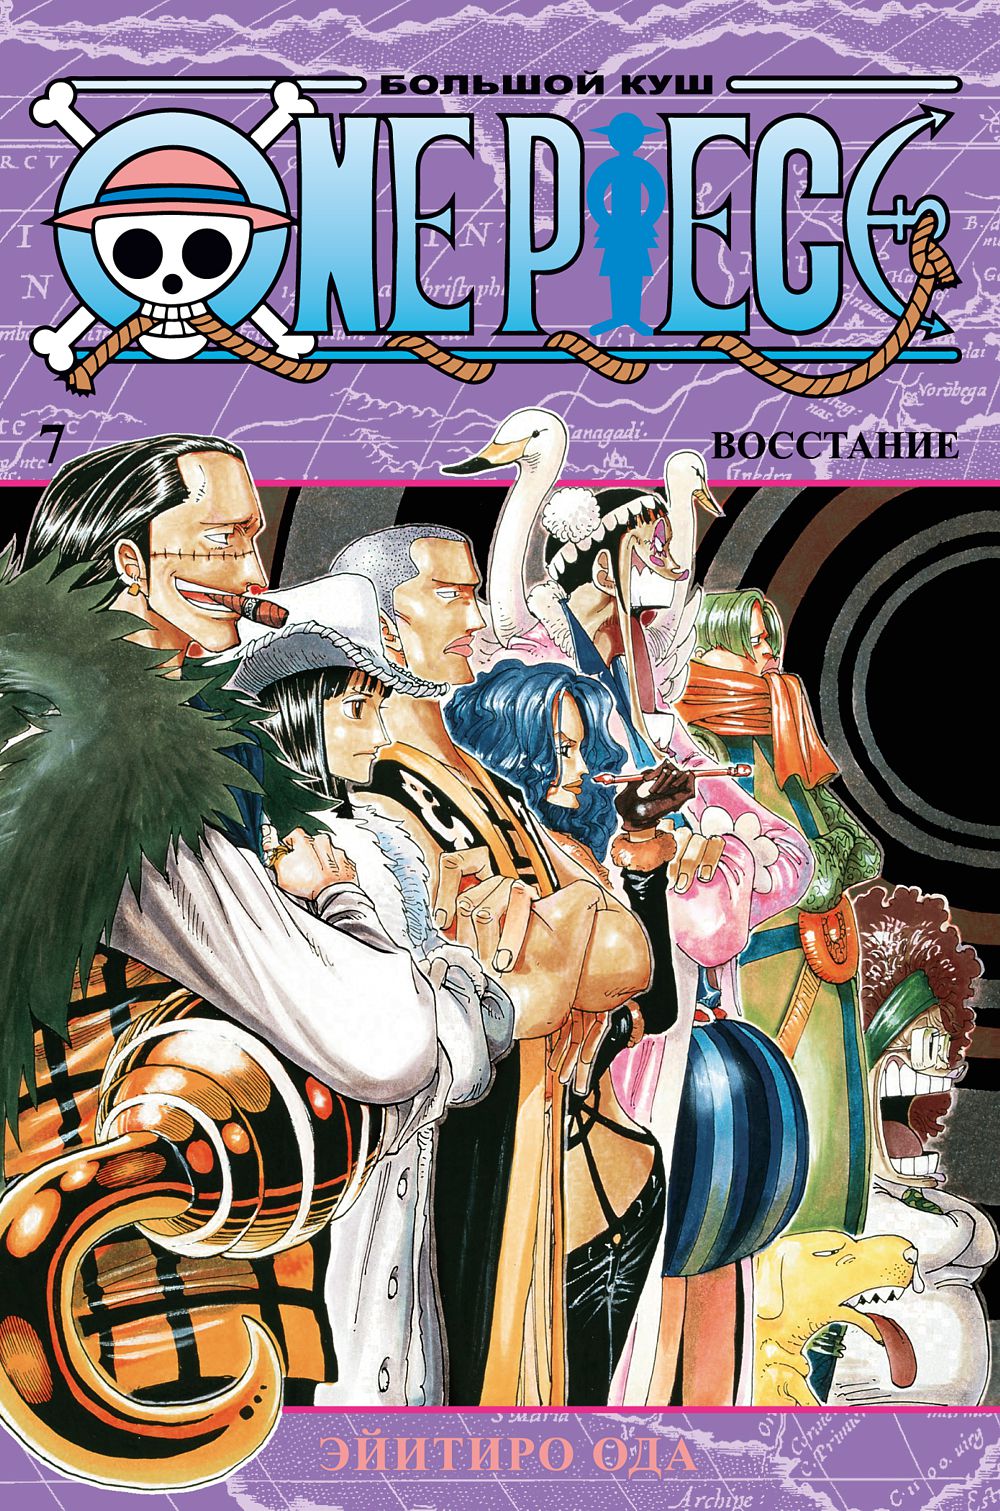 Манга One Piece: Большой куш – Восстание. Книга 7 от 1С Интерес